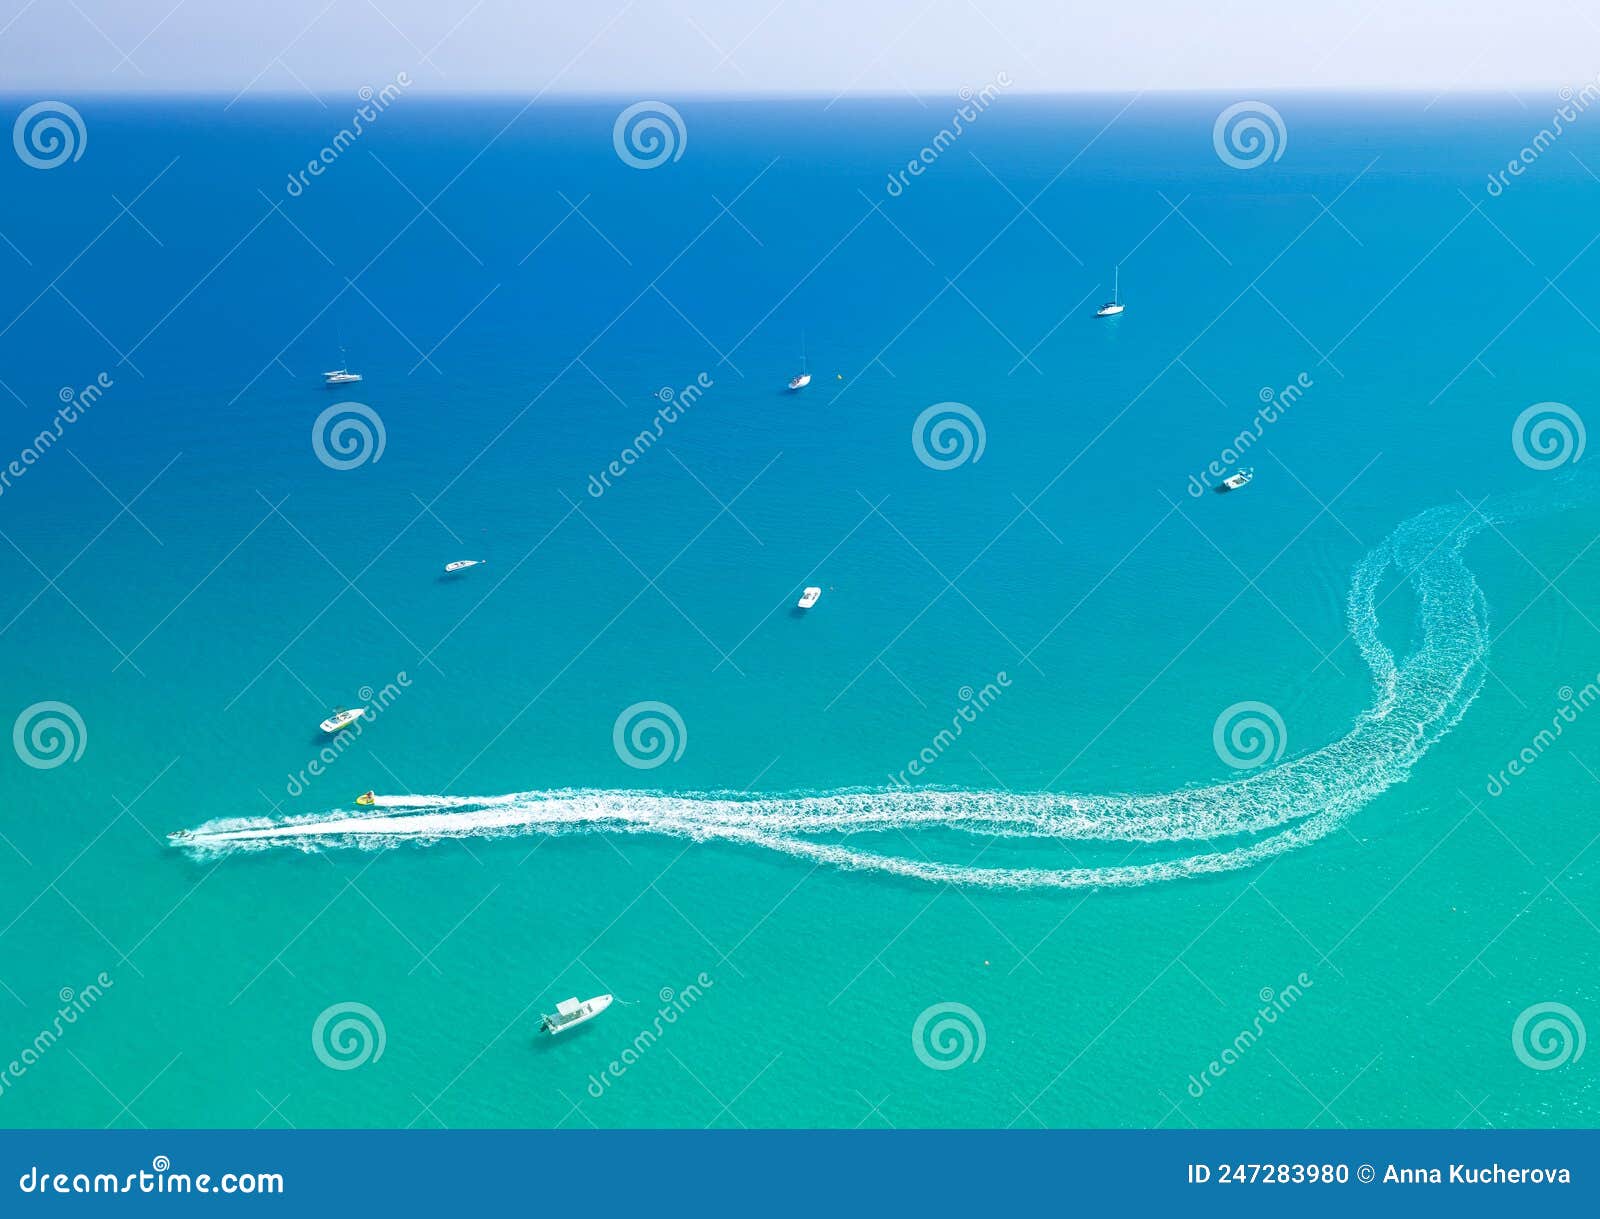 speedboat leaves spray trail on sea water. watersports at seaside, aerial seascape